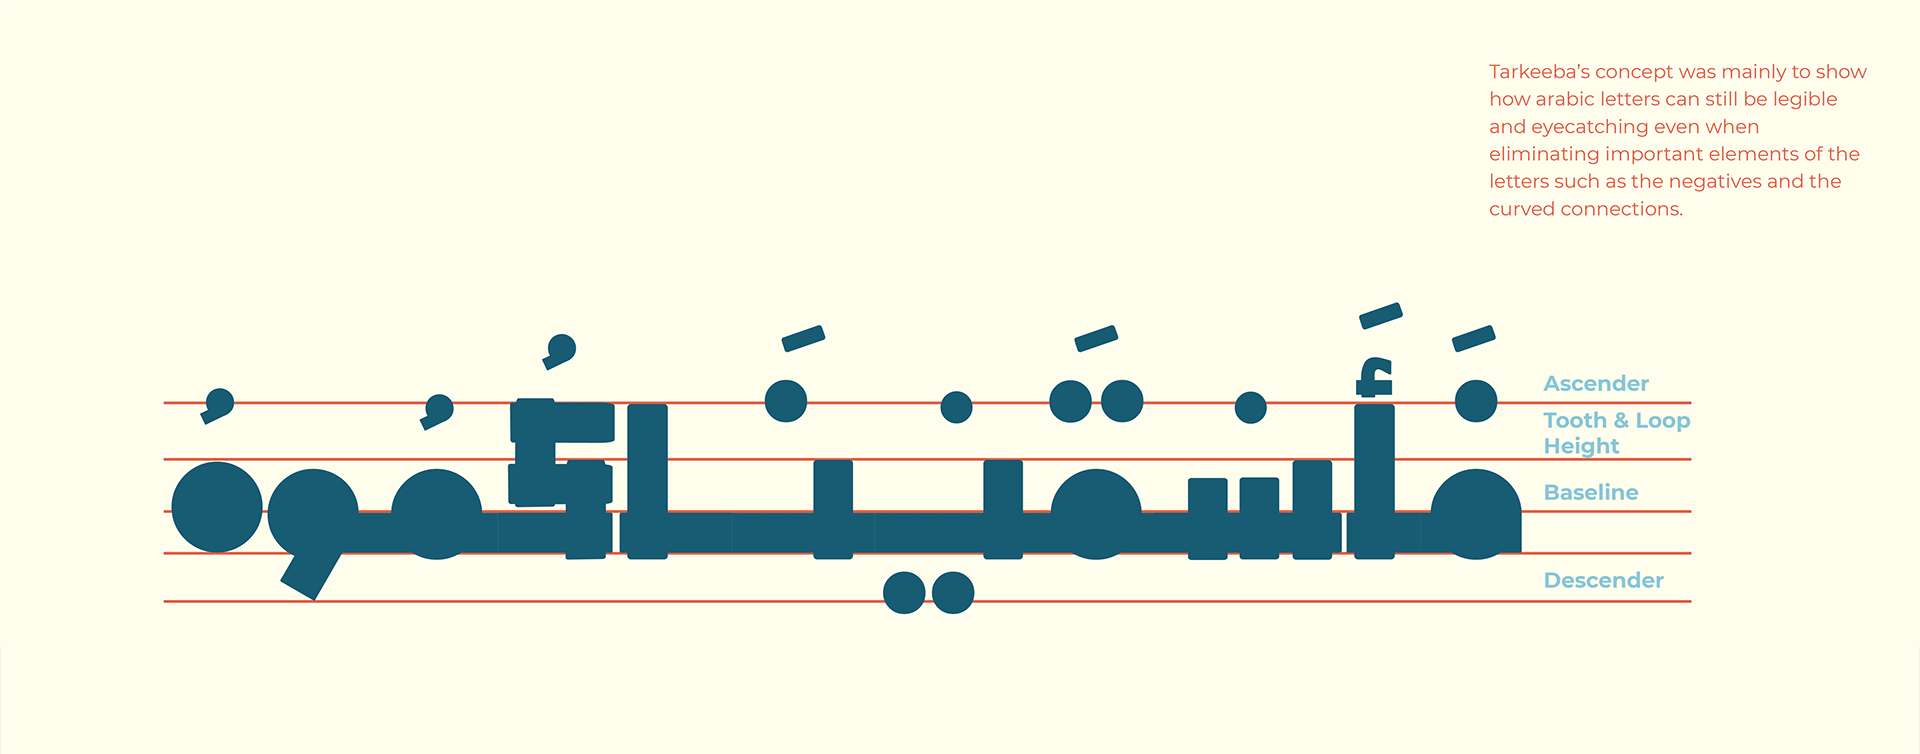 Tarkeeba Free Arabic Font - arabic